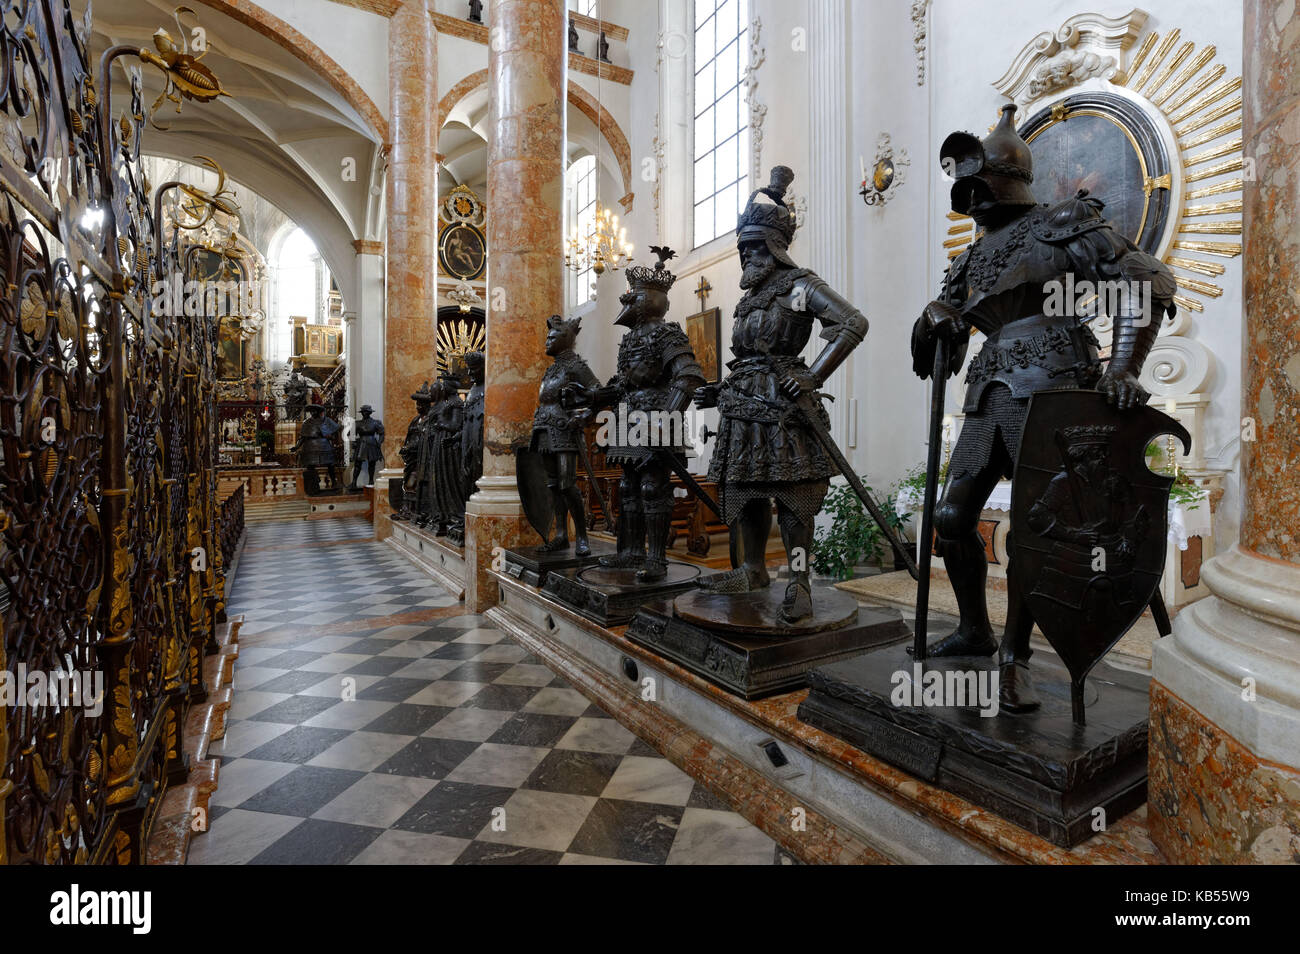 Austria, Tirol, Innsbruck, Hofkirche, 28 estatuas monumentales de bronce rodean la tumba del emperador Maximiliano I, el monumento imperial más importante de Europa Foto de stock